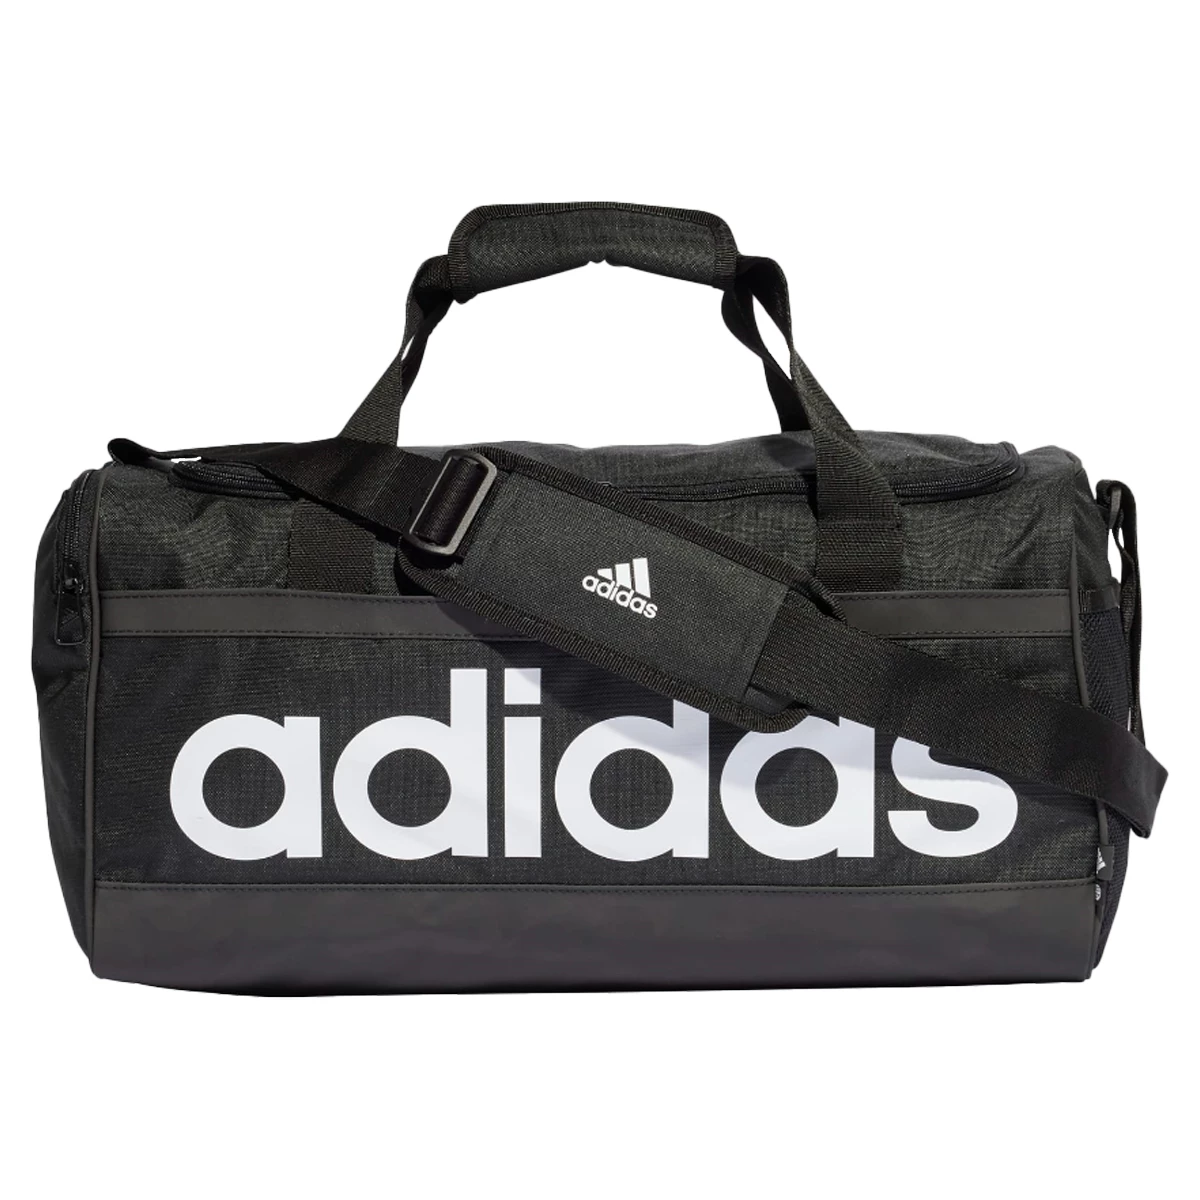 verwijderen Ellende Productie Adidas Linear Duffel S Sporttas van tassen